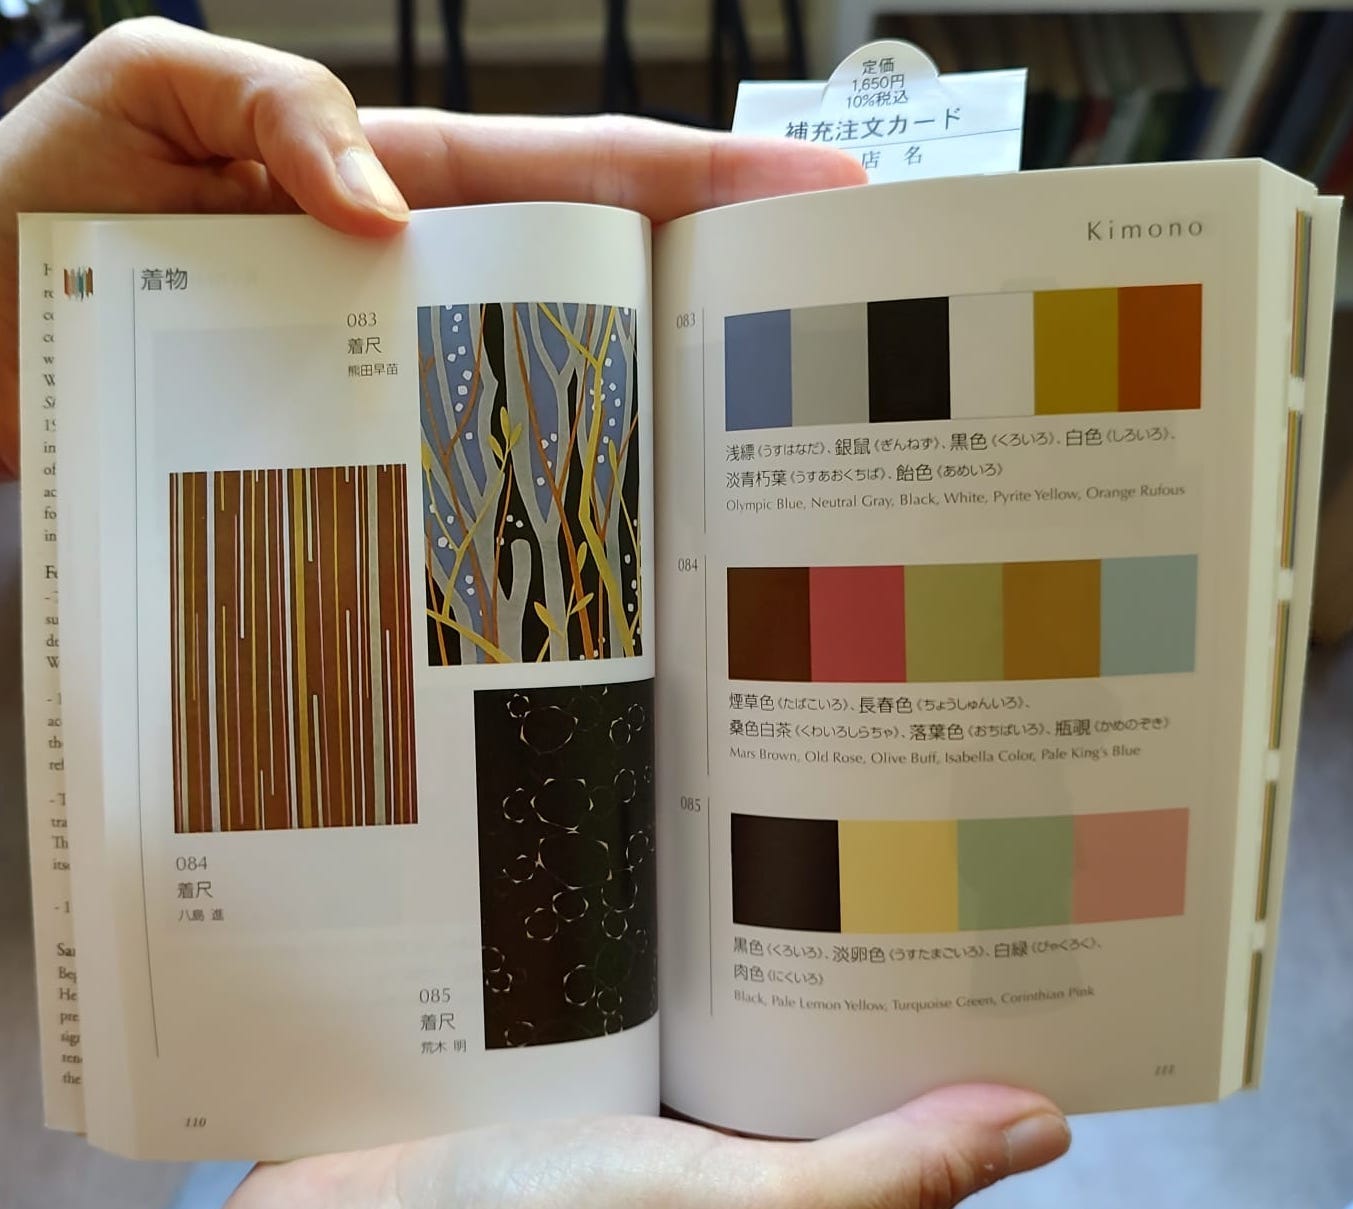 Foto di un'apertura del libro: sulla sinistra ci sono delle stampe giapponesi e sulla destra le palette di colori usate in quelle stampe.